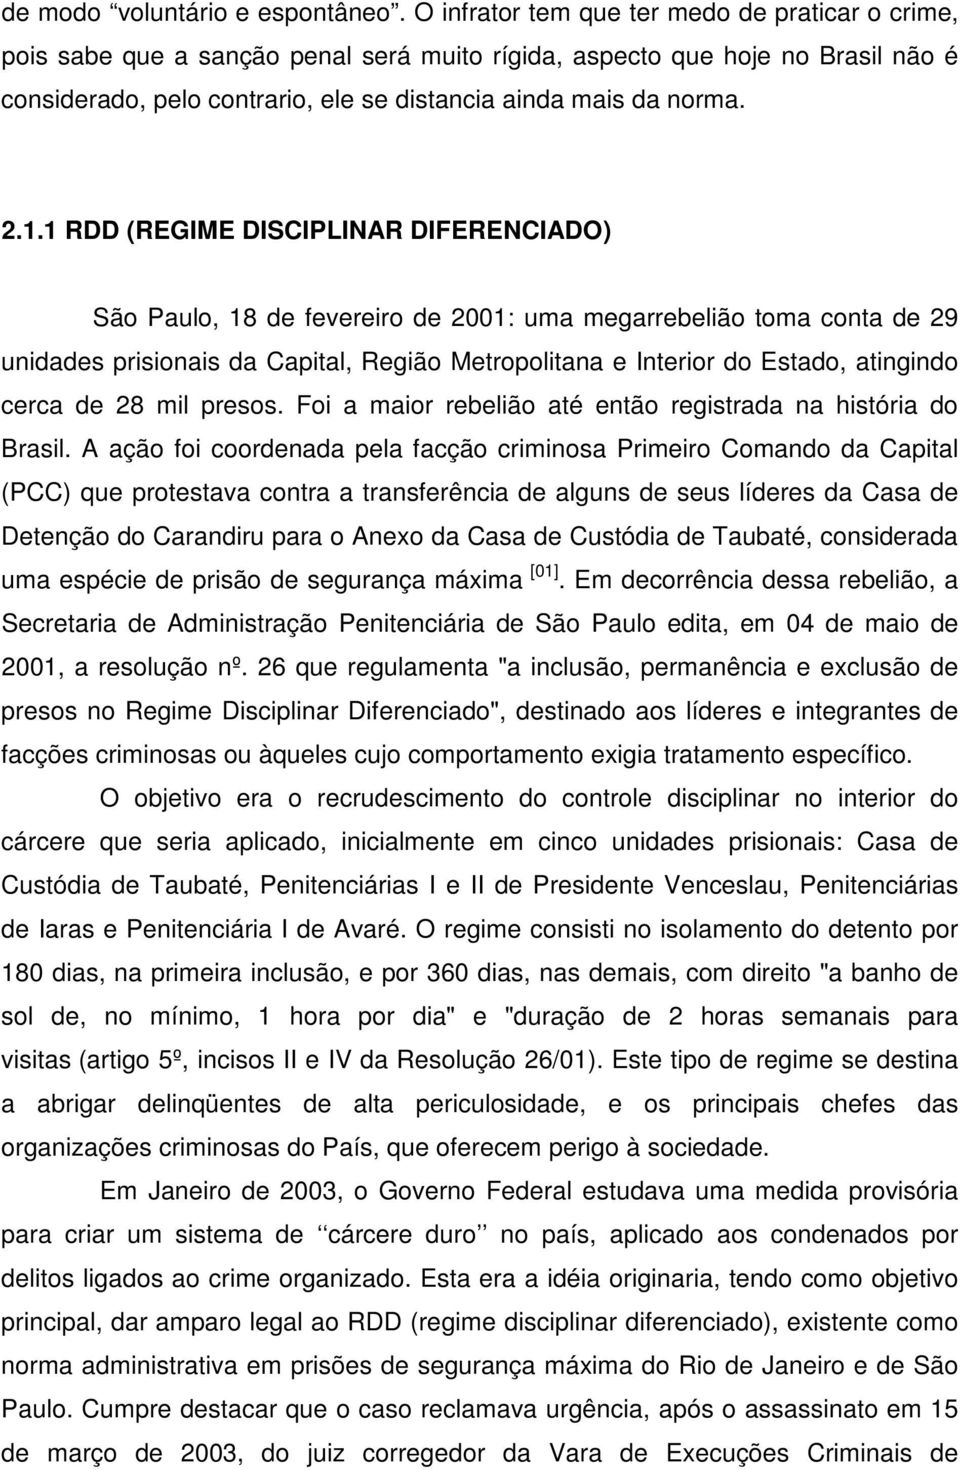 1.1 RDD (REGIME DISCIPLINAR DIFERENCIADO) São Paulo, 18 de fevereiro de 2001: uma megarrebelião toma conta de 29 unidades prisionais da Capital, Região Metropolitana e Interior do Estado, atingindo